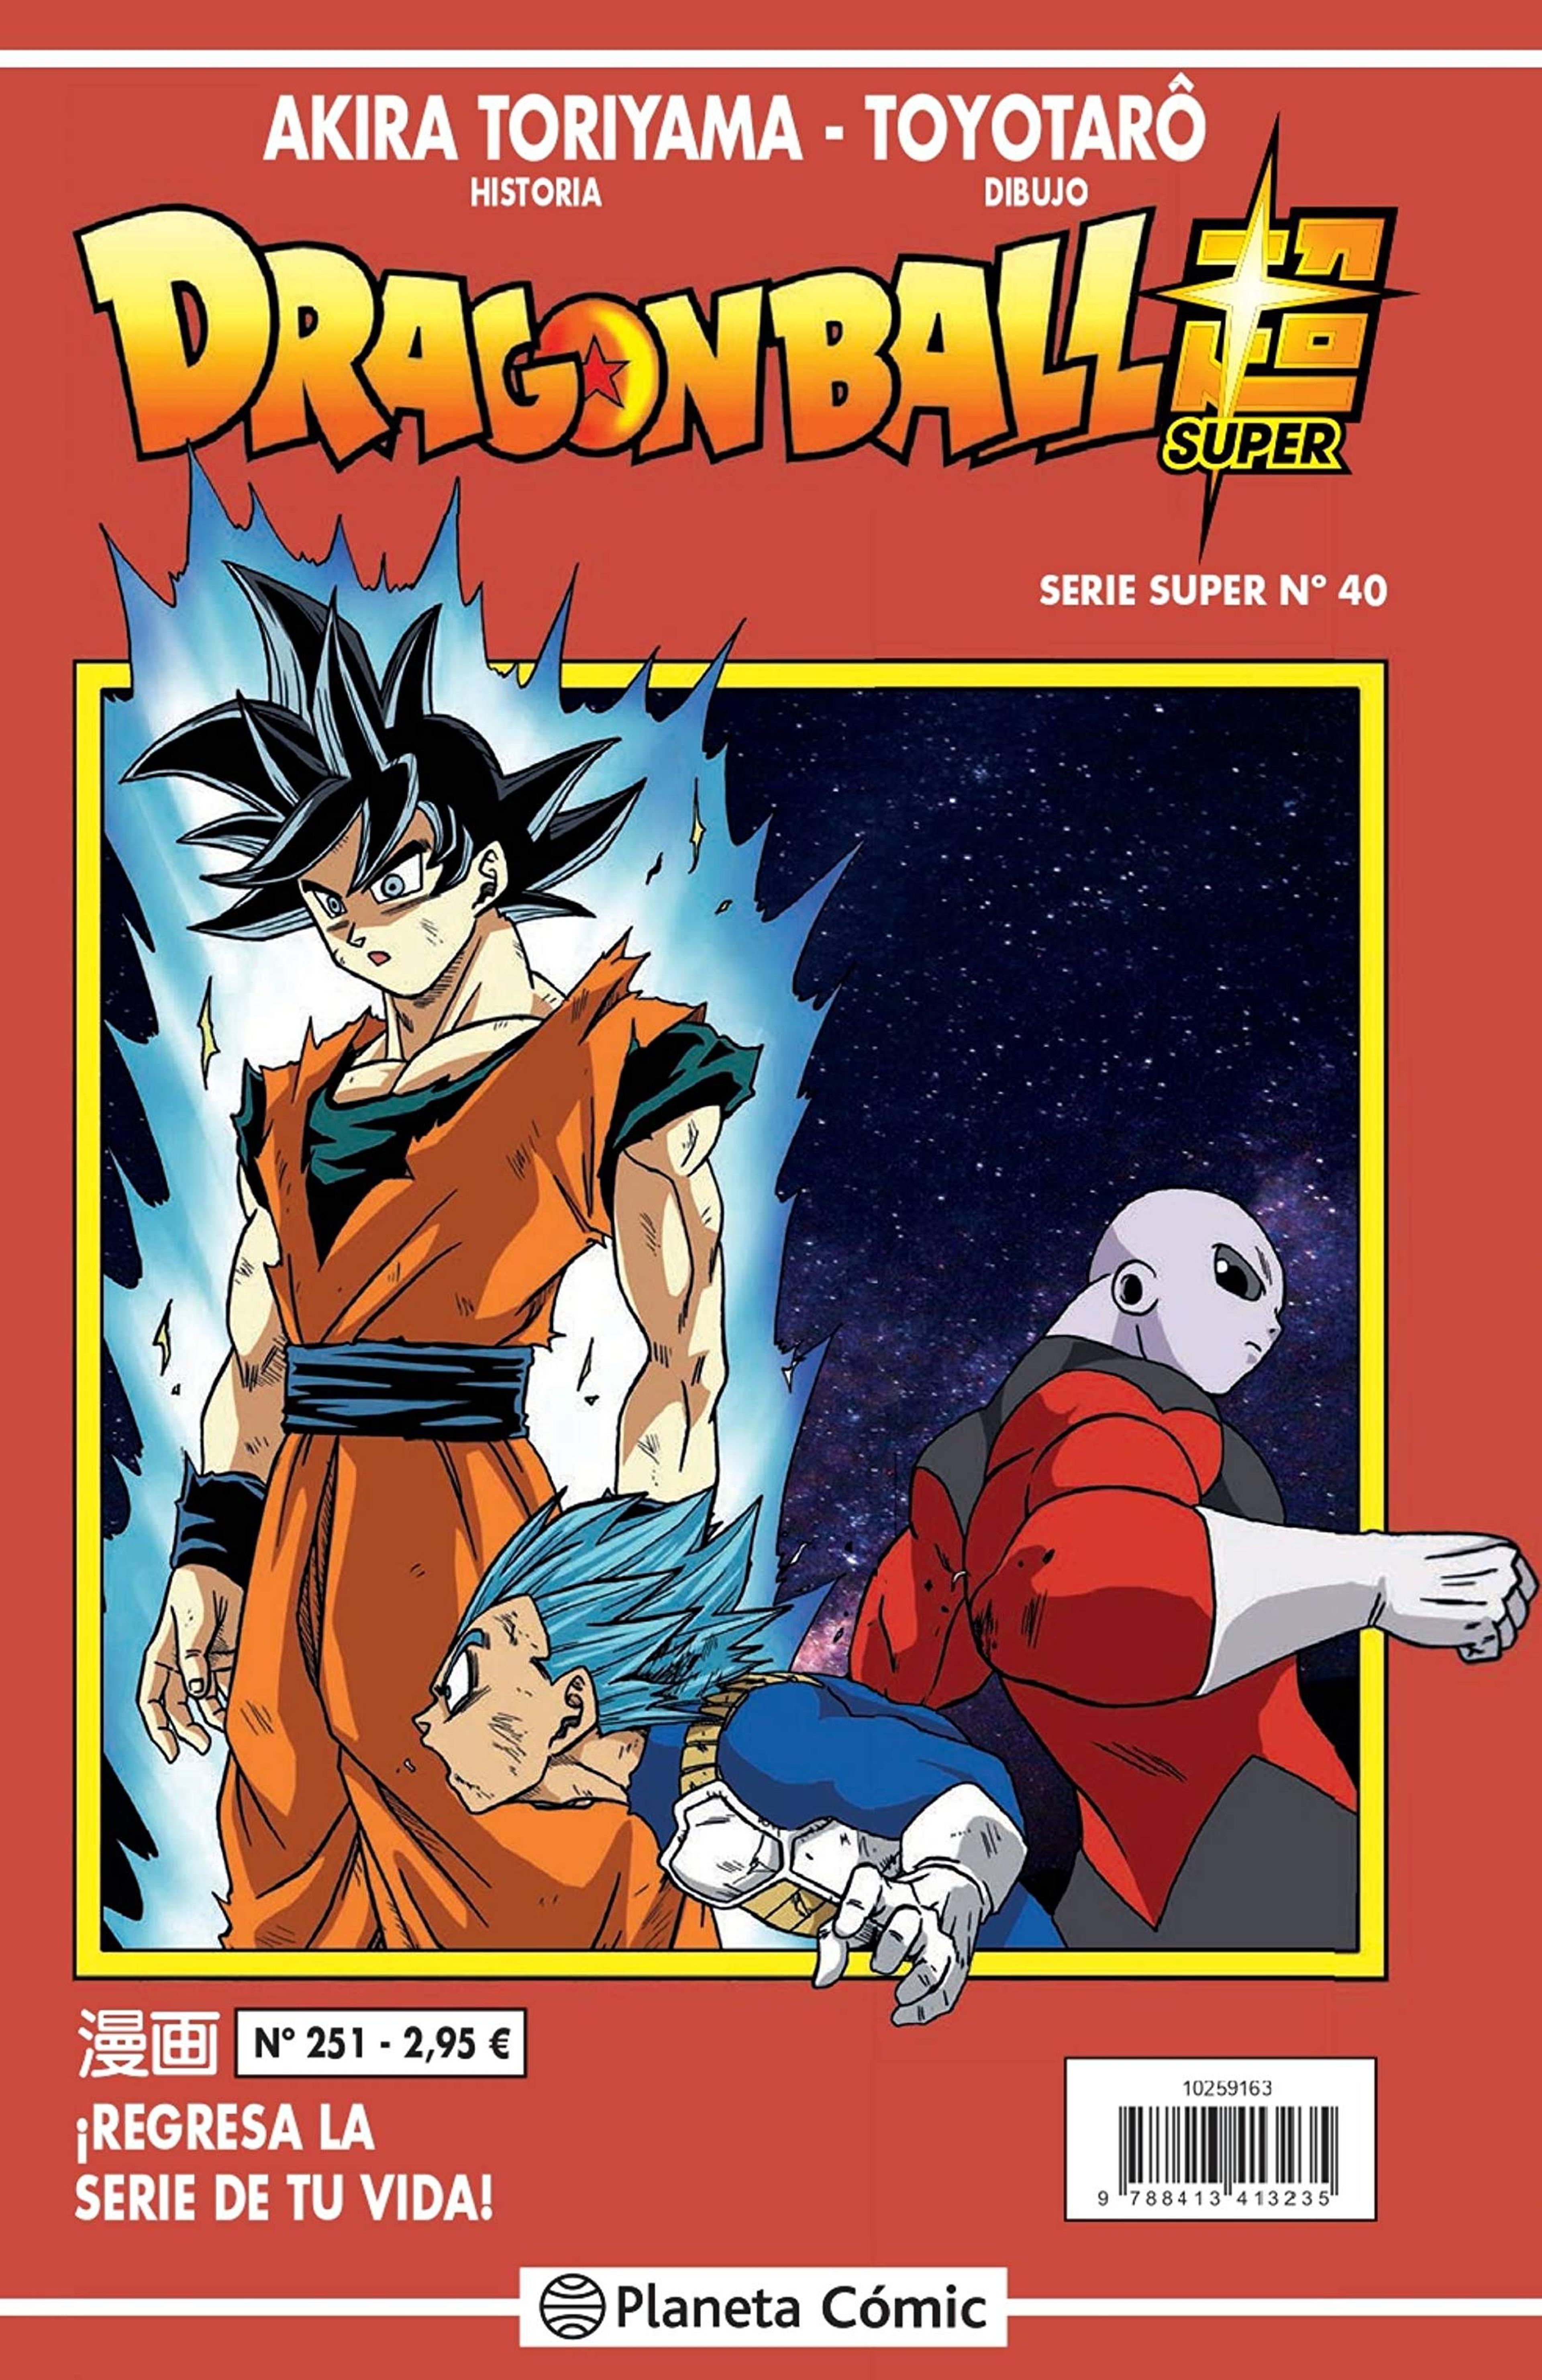 Dragon Ball Super - Portada y fecha del número 40 de la Serie Roja